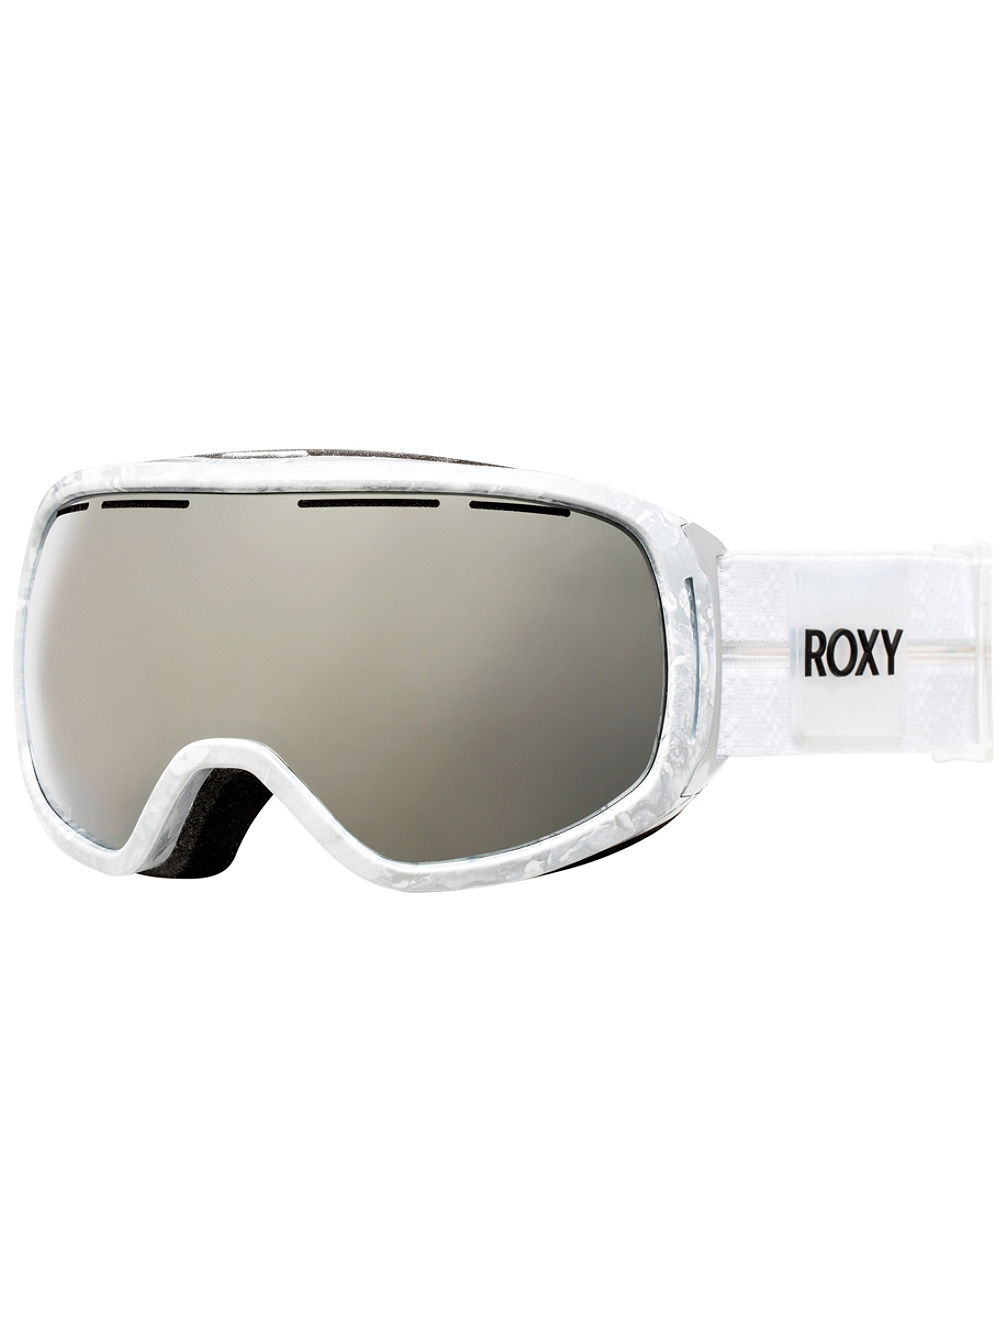 Premiere Rockferry Goggle Bright White Goggle